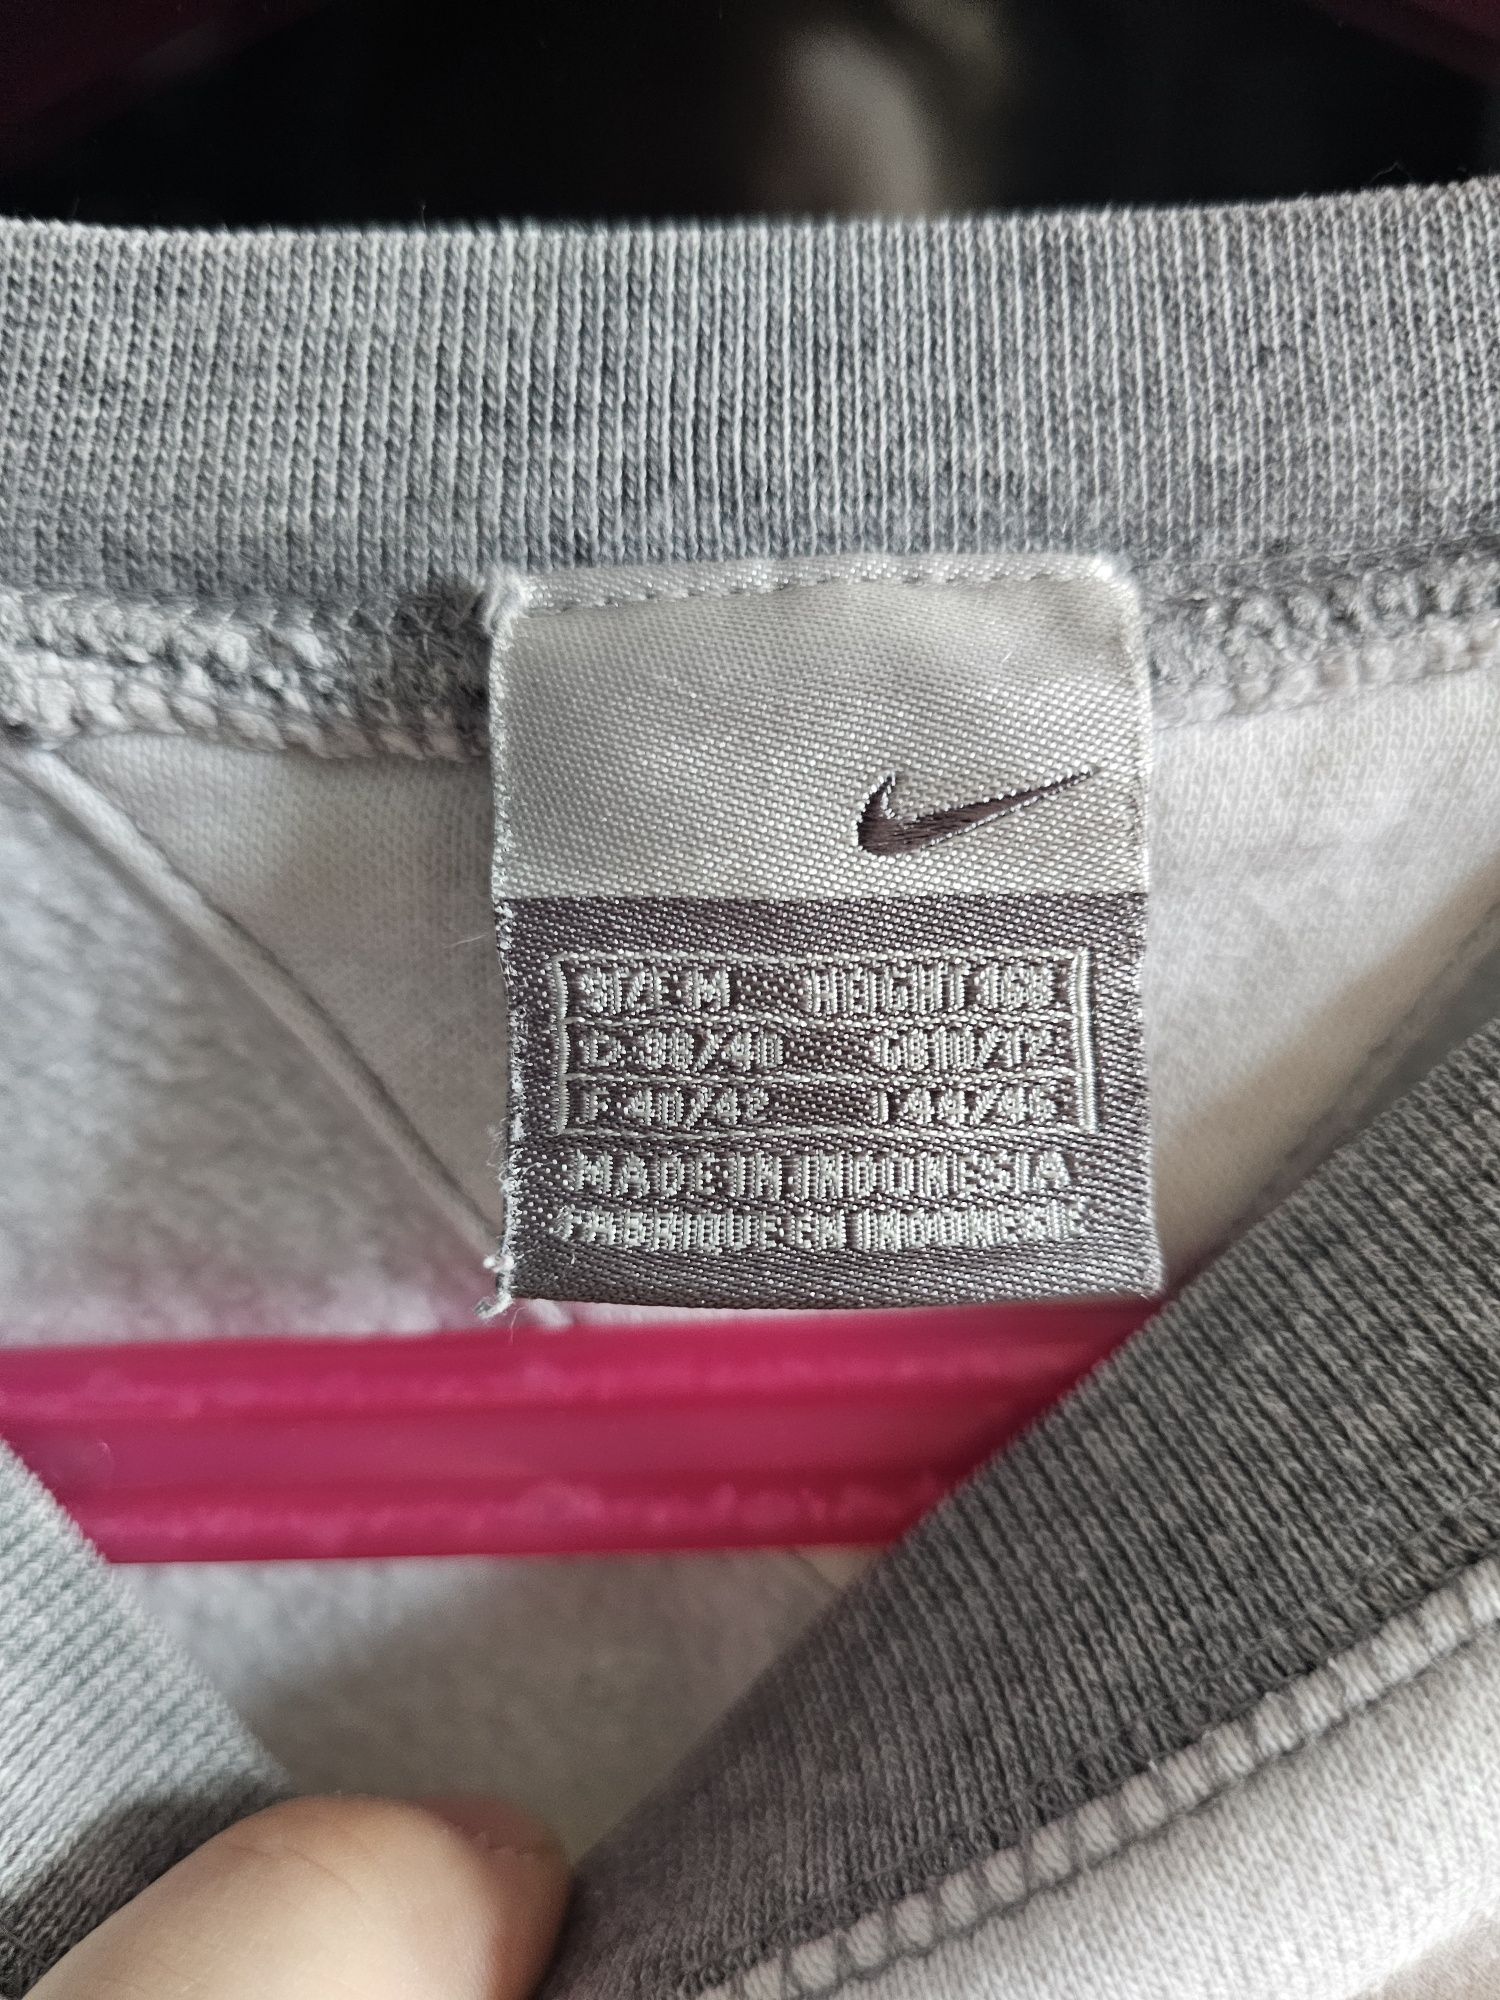 Bluza Nike Air damska rozmiar M